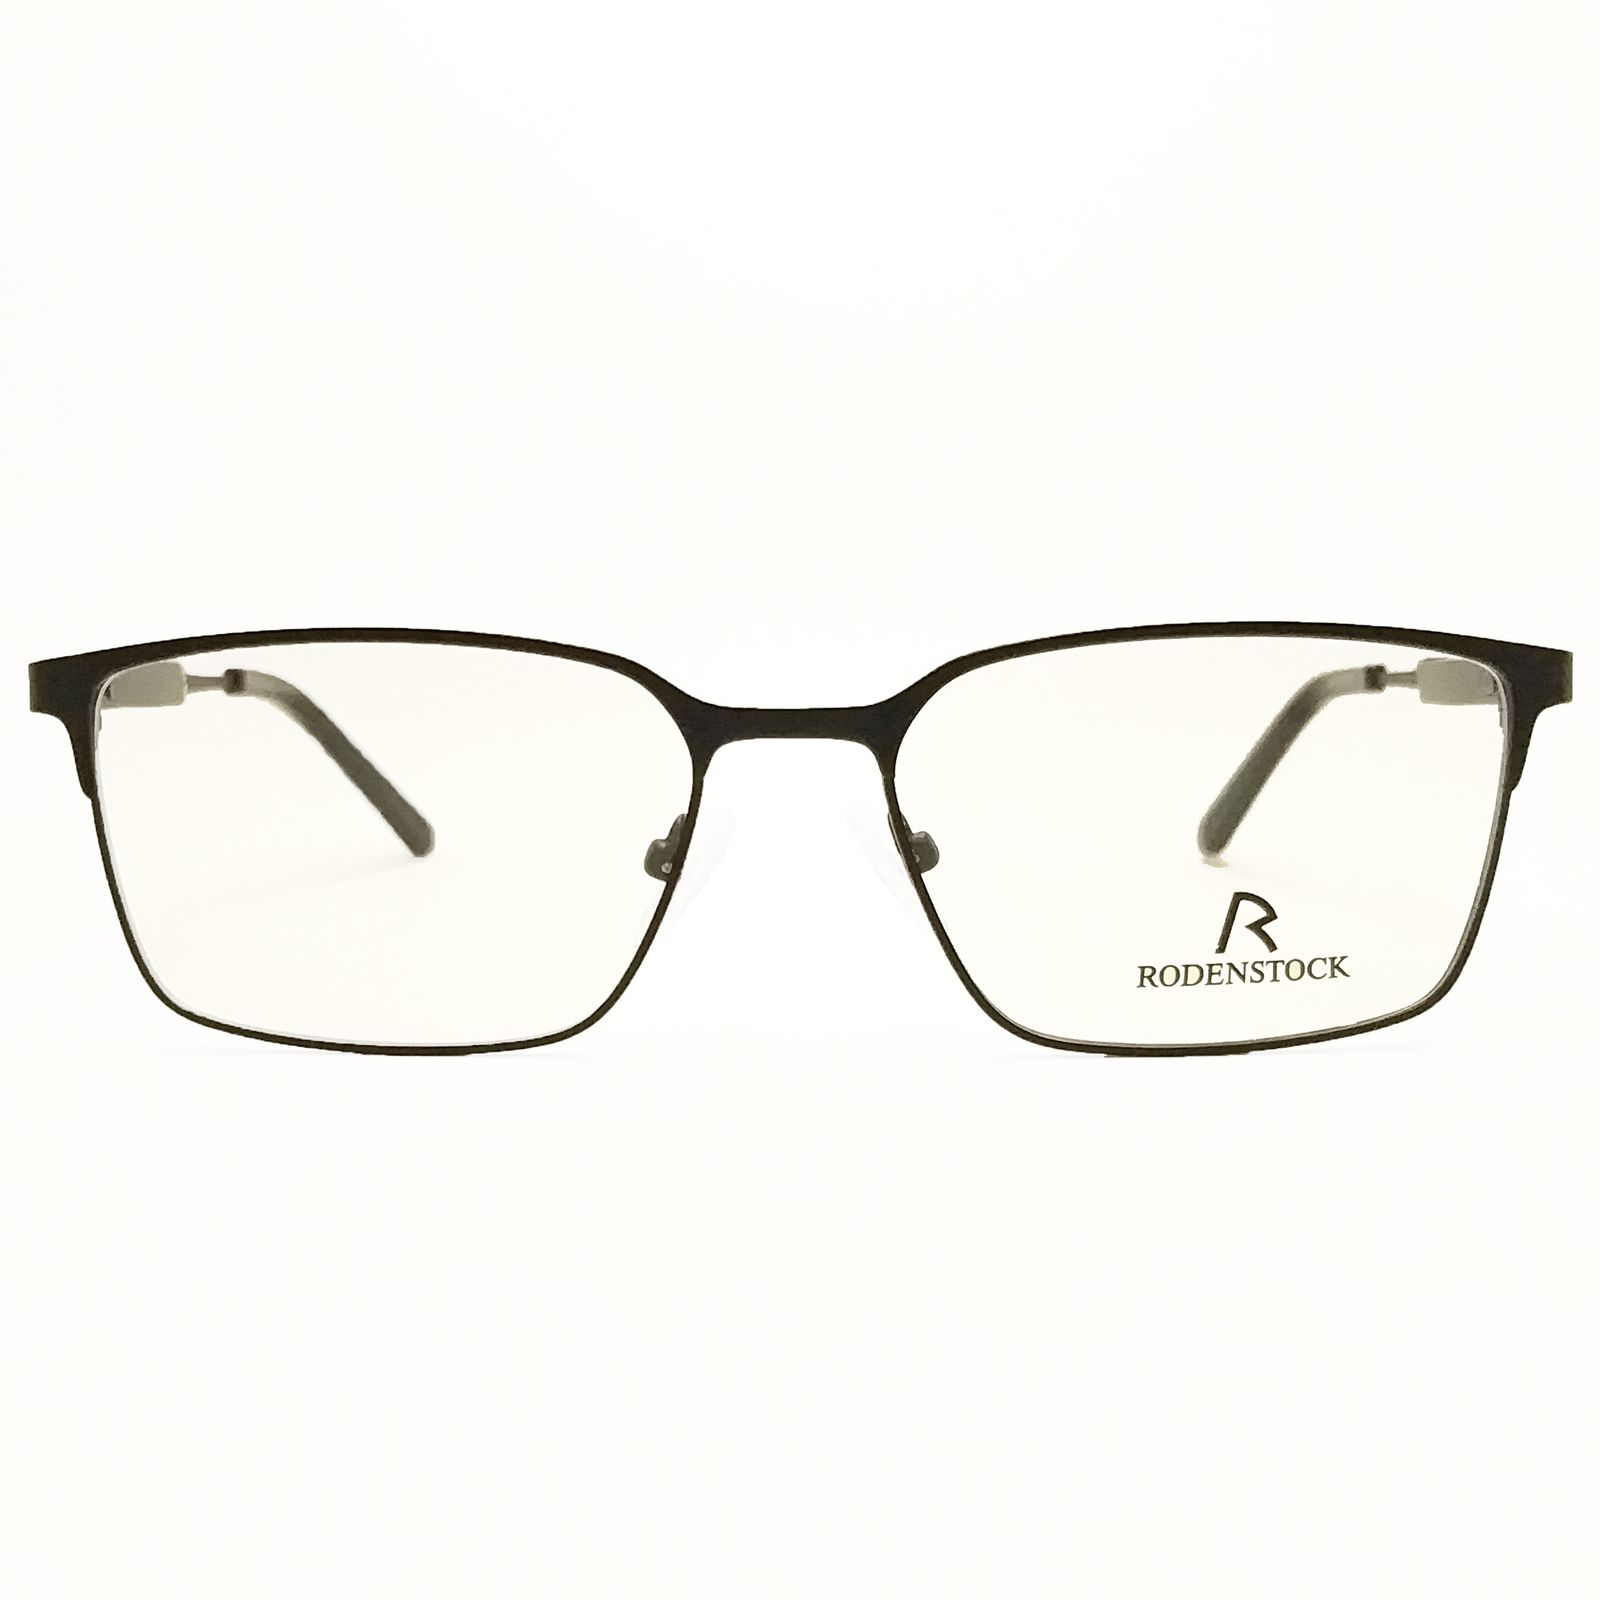 فریم عینک طبی بچگانه رودن اشتوک مدل 2045 -  - 1